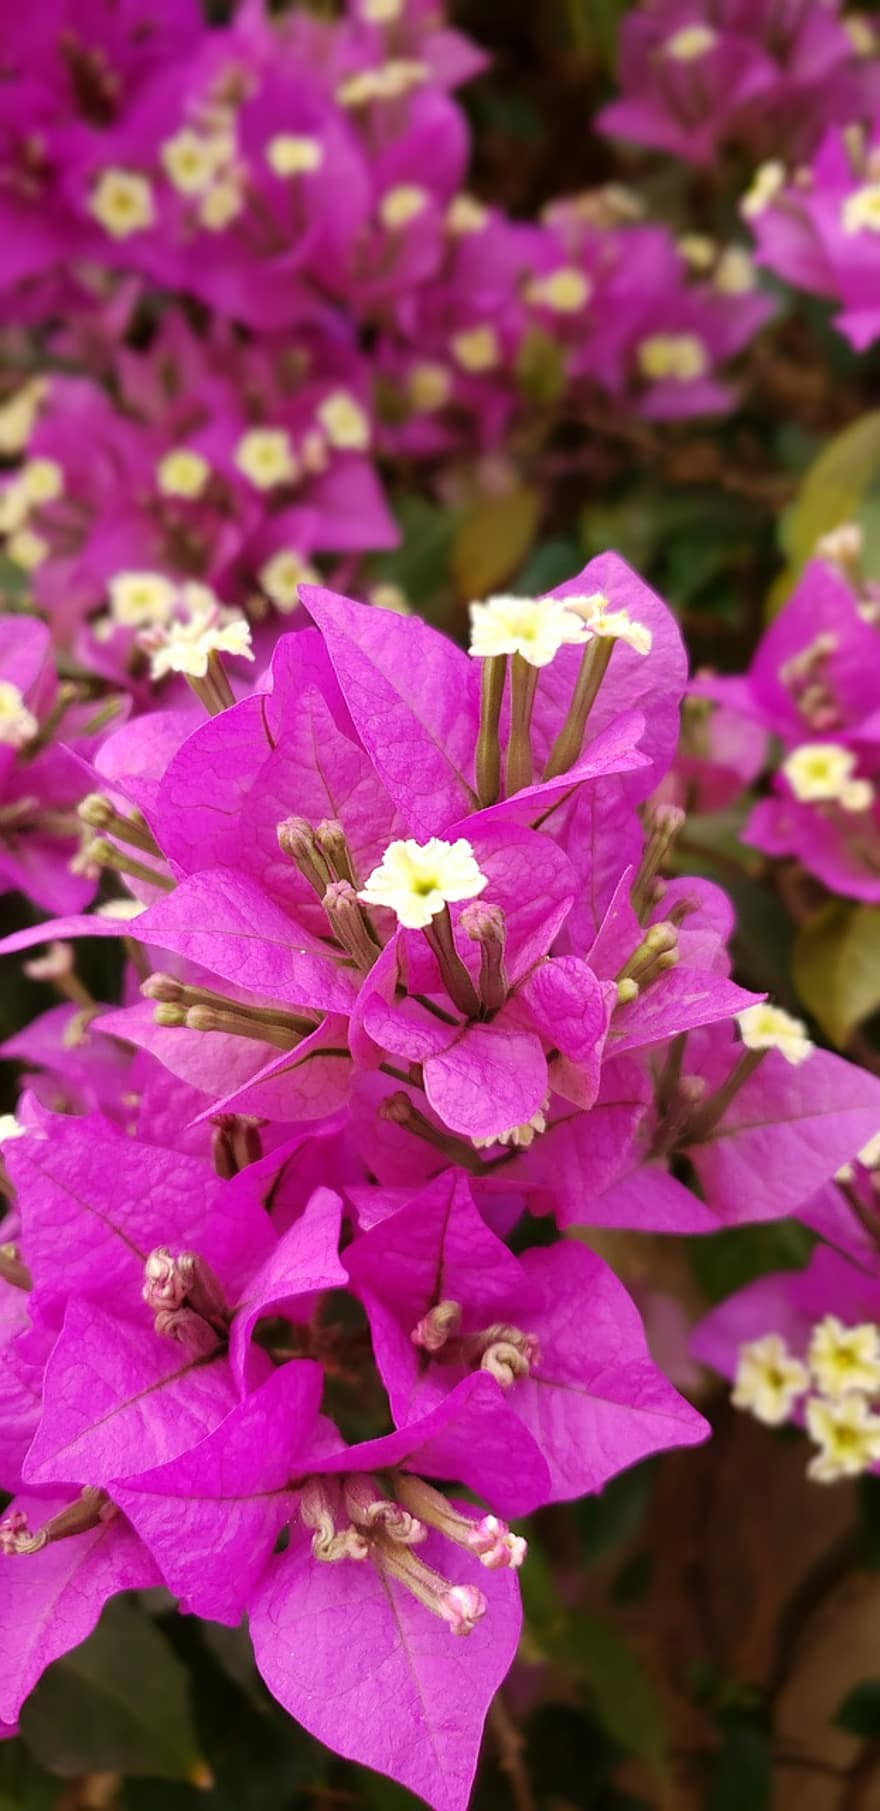 Flowers, Purple Flowers, Bougainvillea, Garden, Nature, Plants, Flora, plant, close-up, leaf, flower